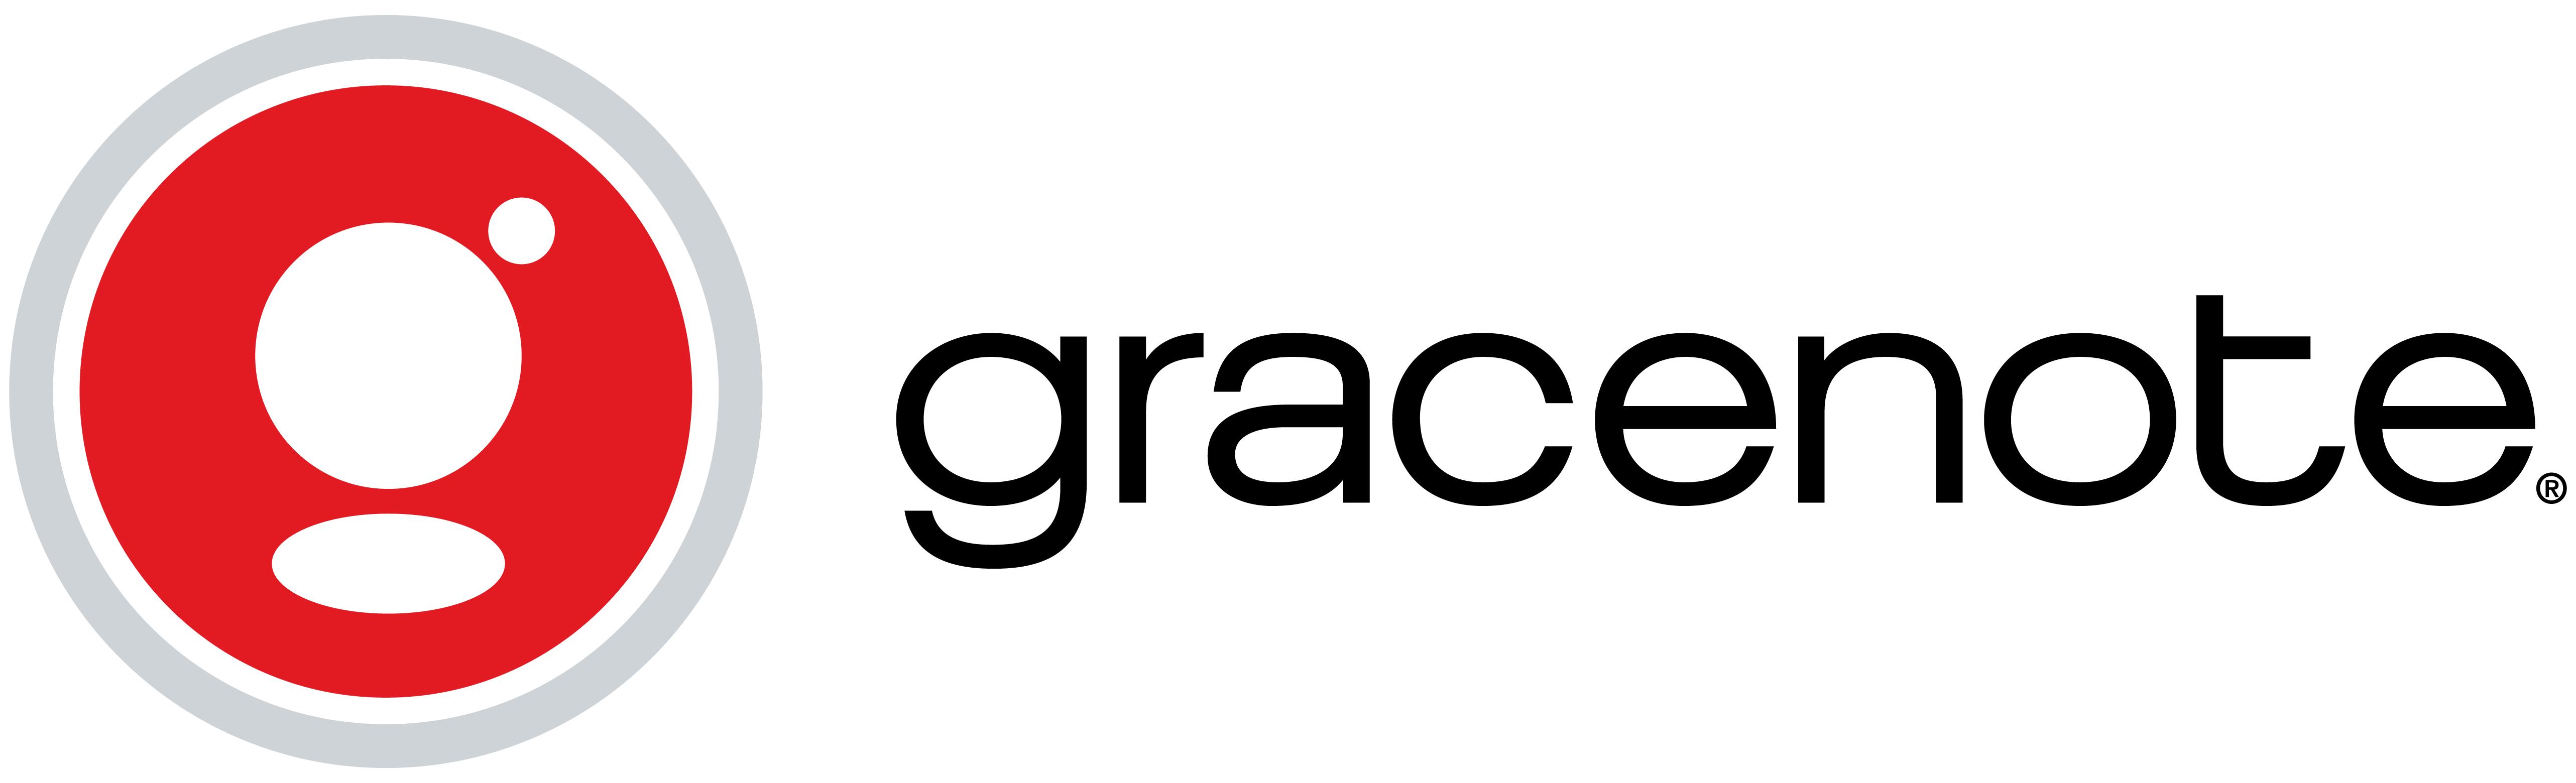 TuneCore Logo - Gracenote: Description, Go Live Time, Territories, Benefits – TuneCore